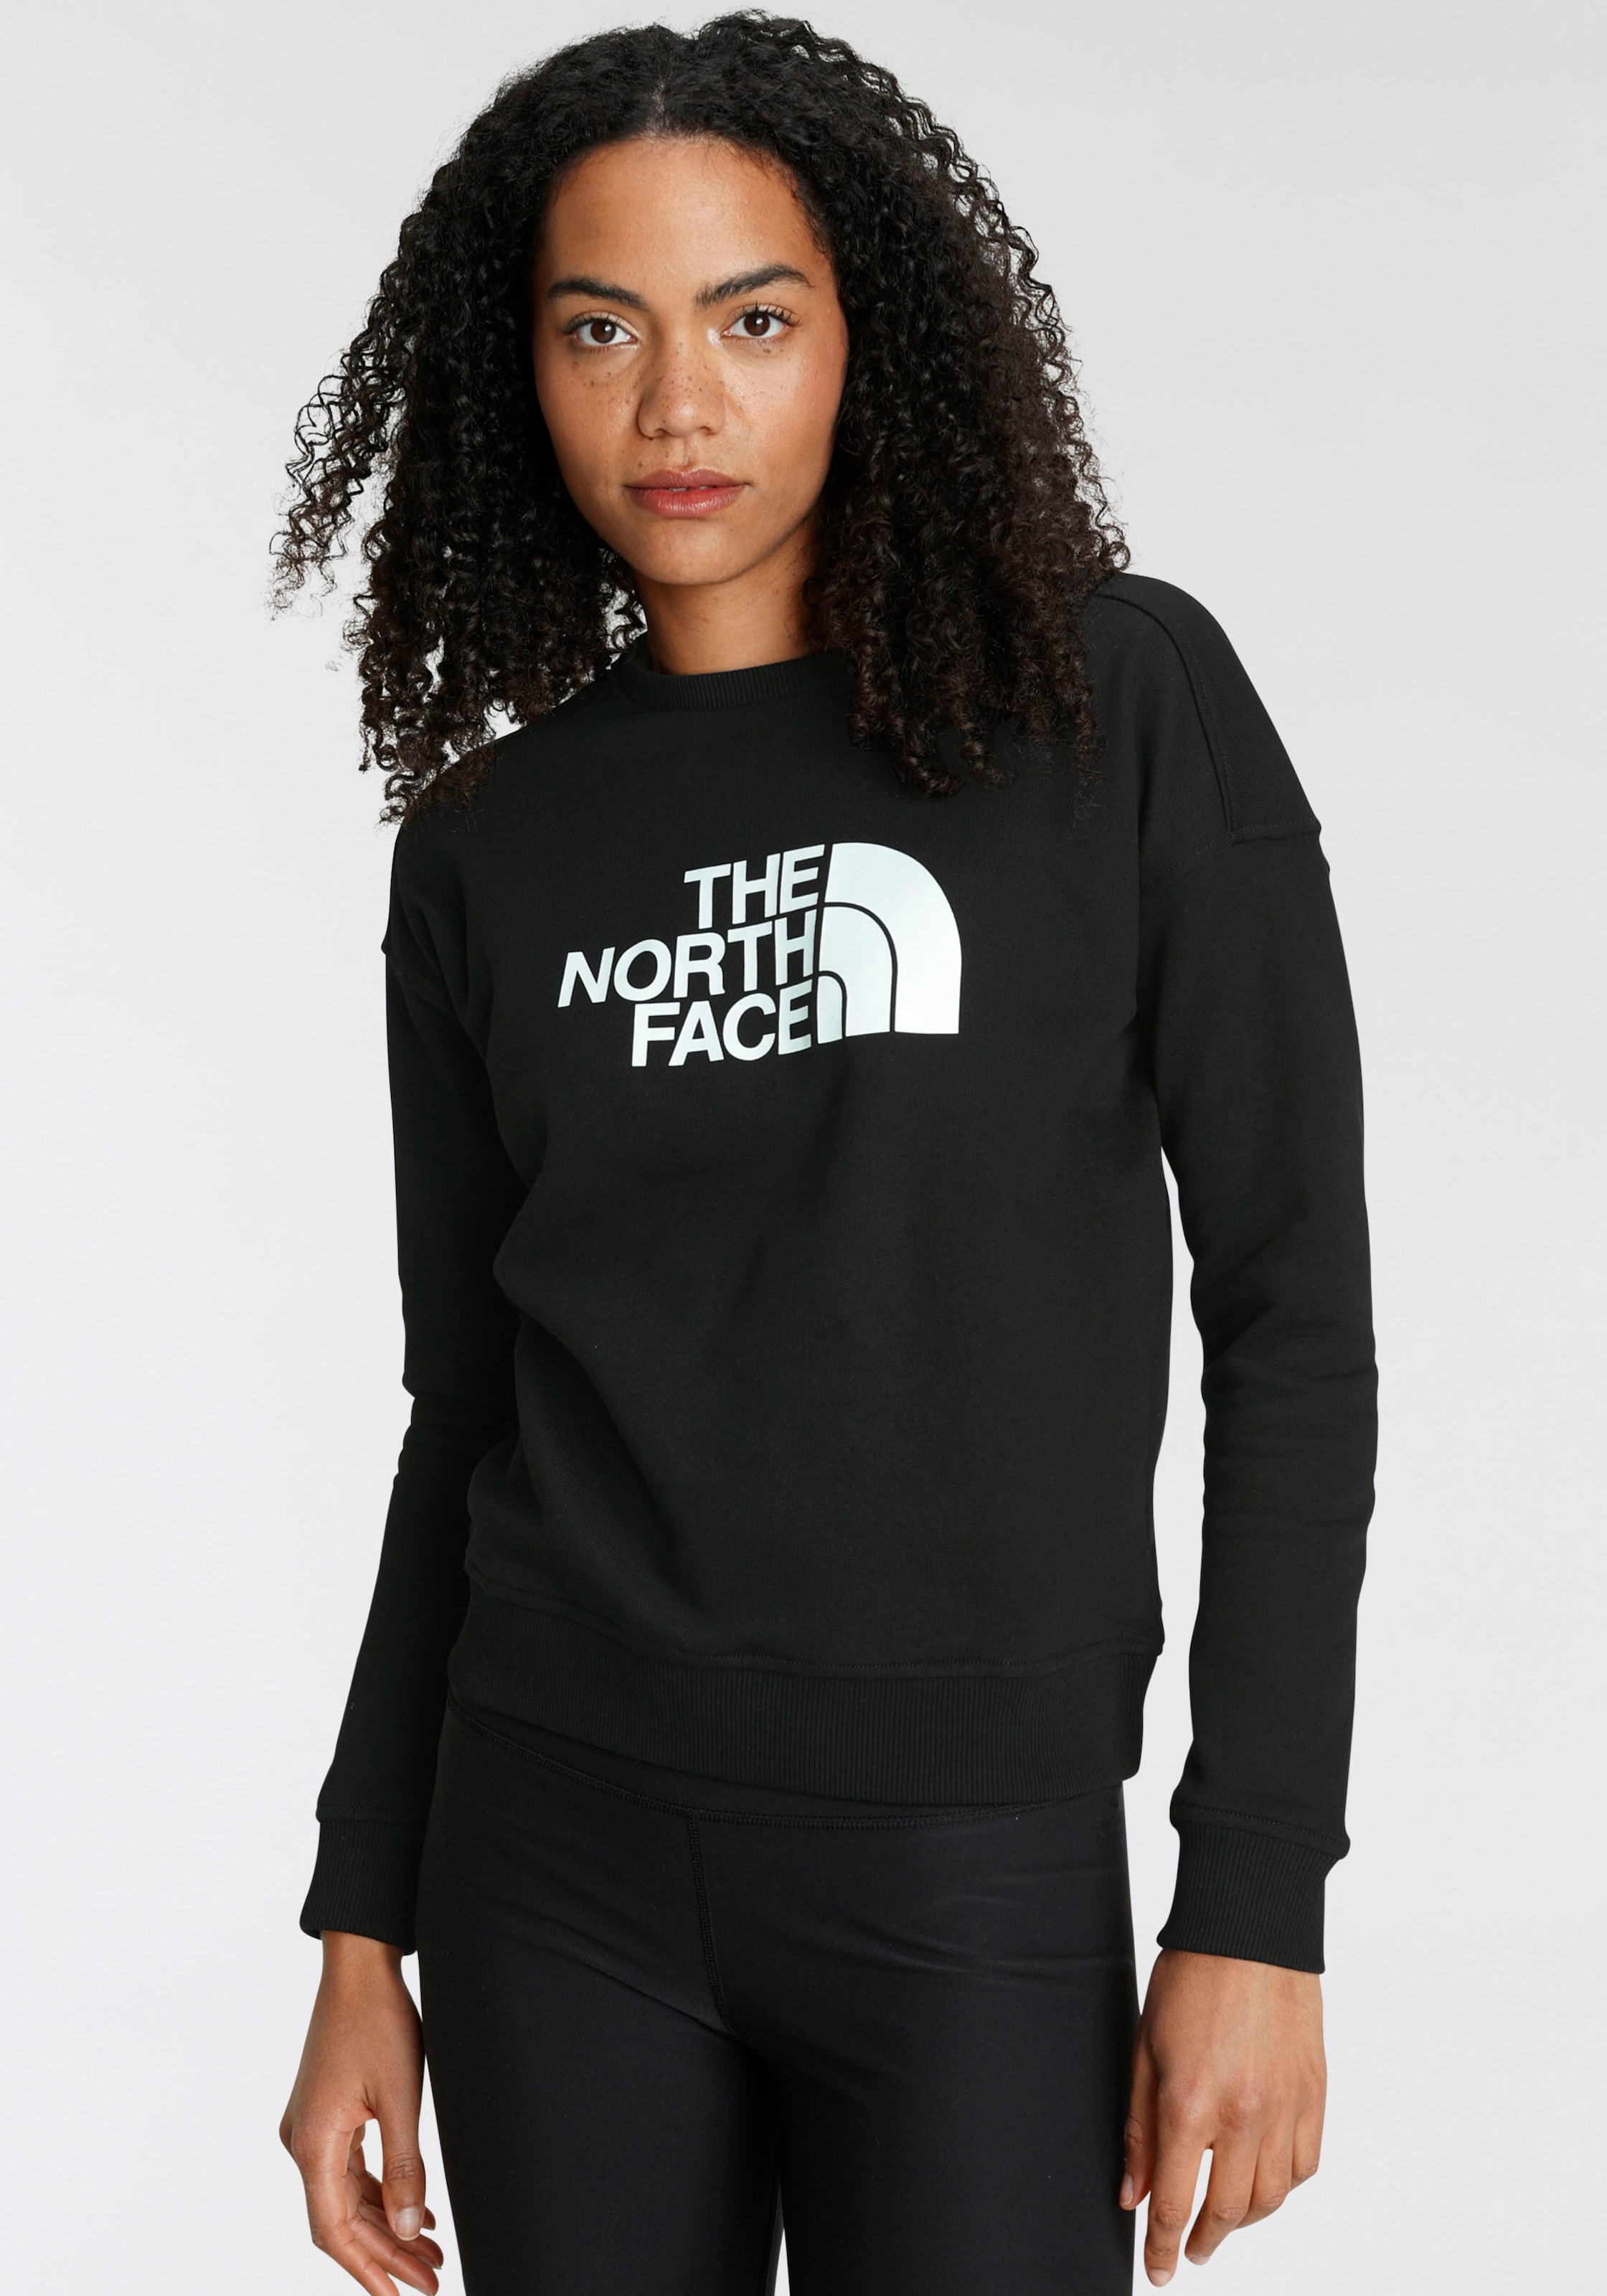 Kaufen Sie beliebte Artikel online The North Face Sweatshirt - (1 bei PEAK DREW CREW EU«, tlg.) »W